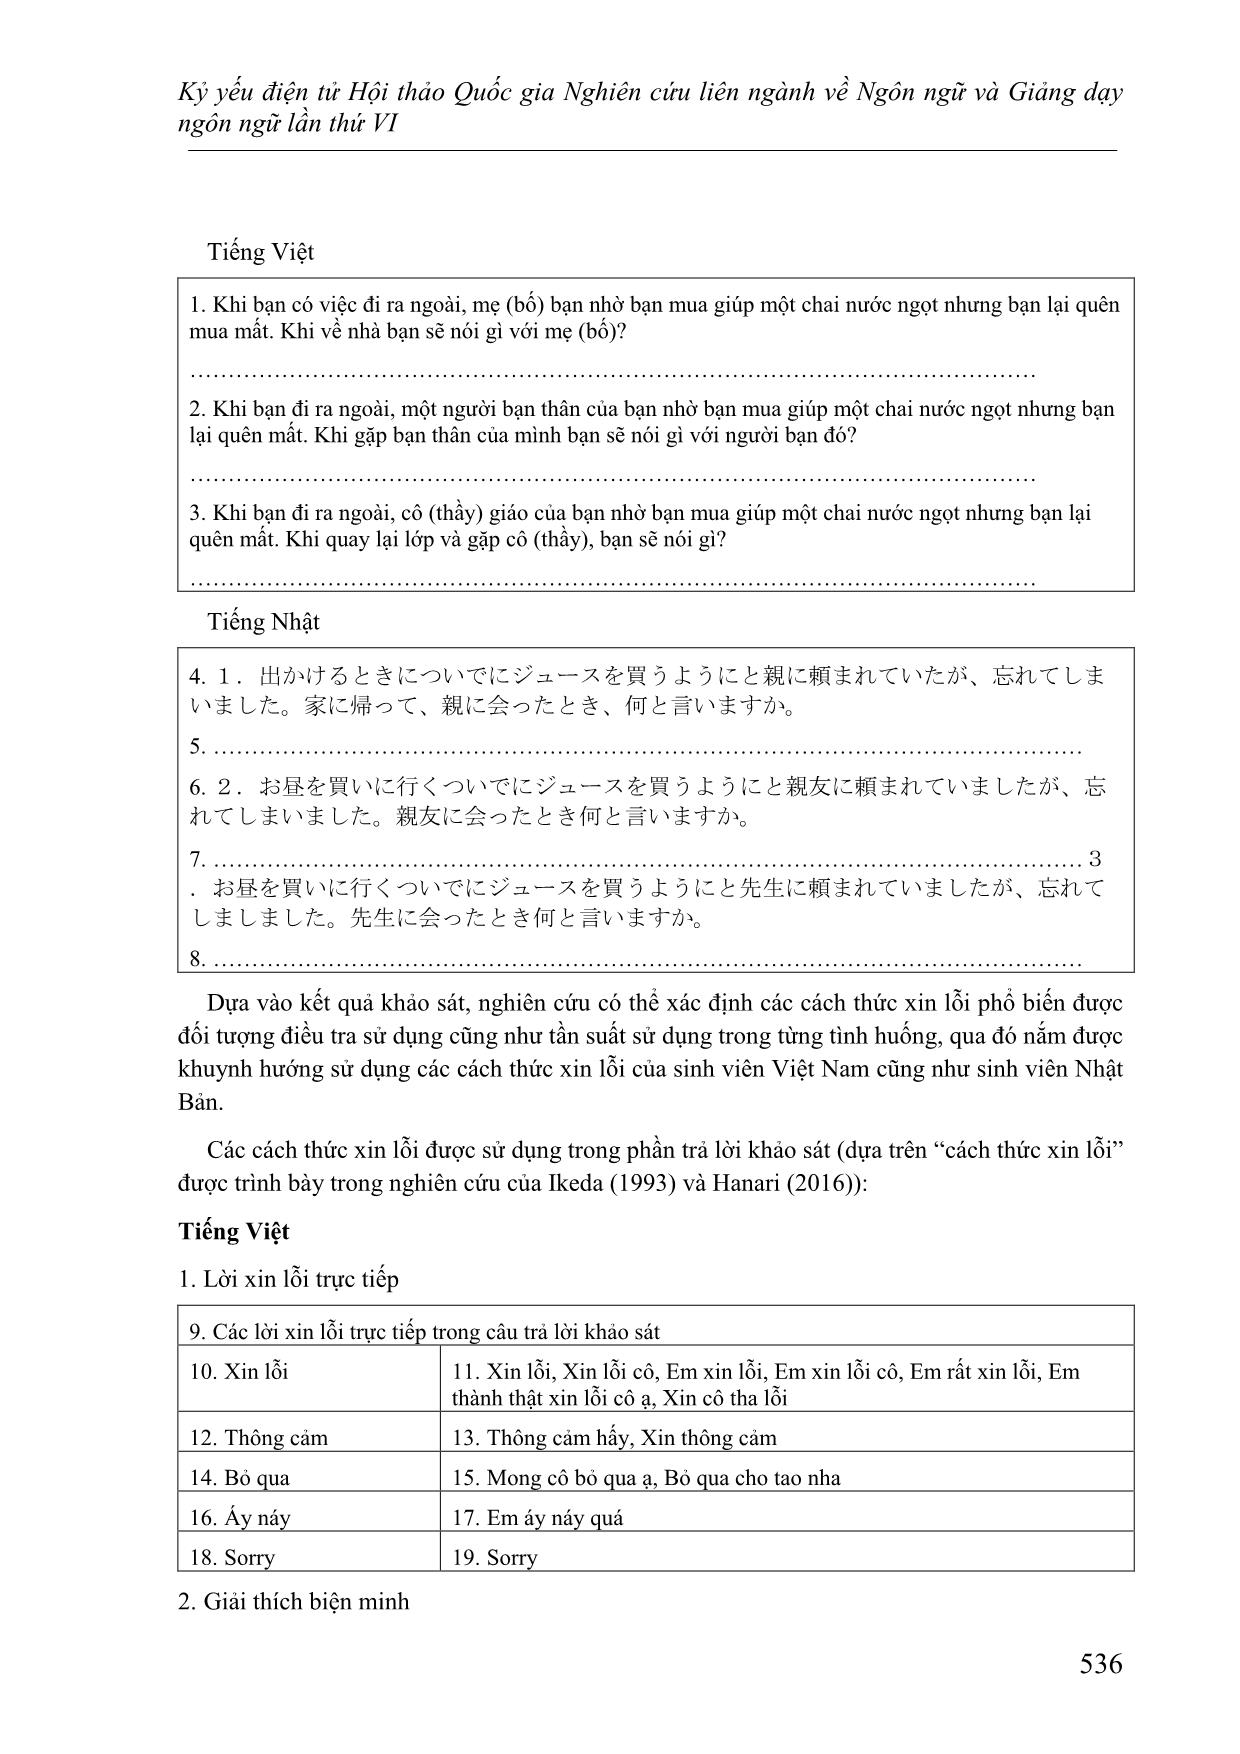 Các cách thức xin lỗi trong tiếng Việt và tiếng Nhật - Đối chiếu dựa trên lý thuyết lịch sự của Brown và Levinson trang 4